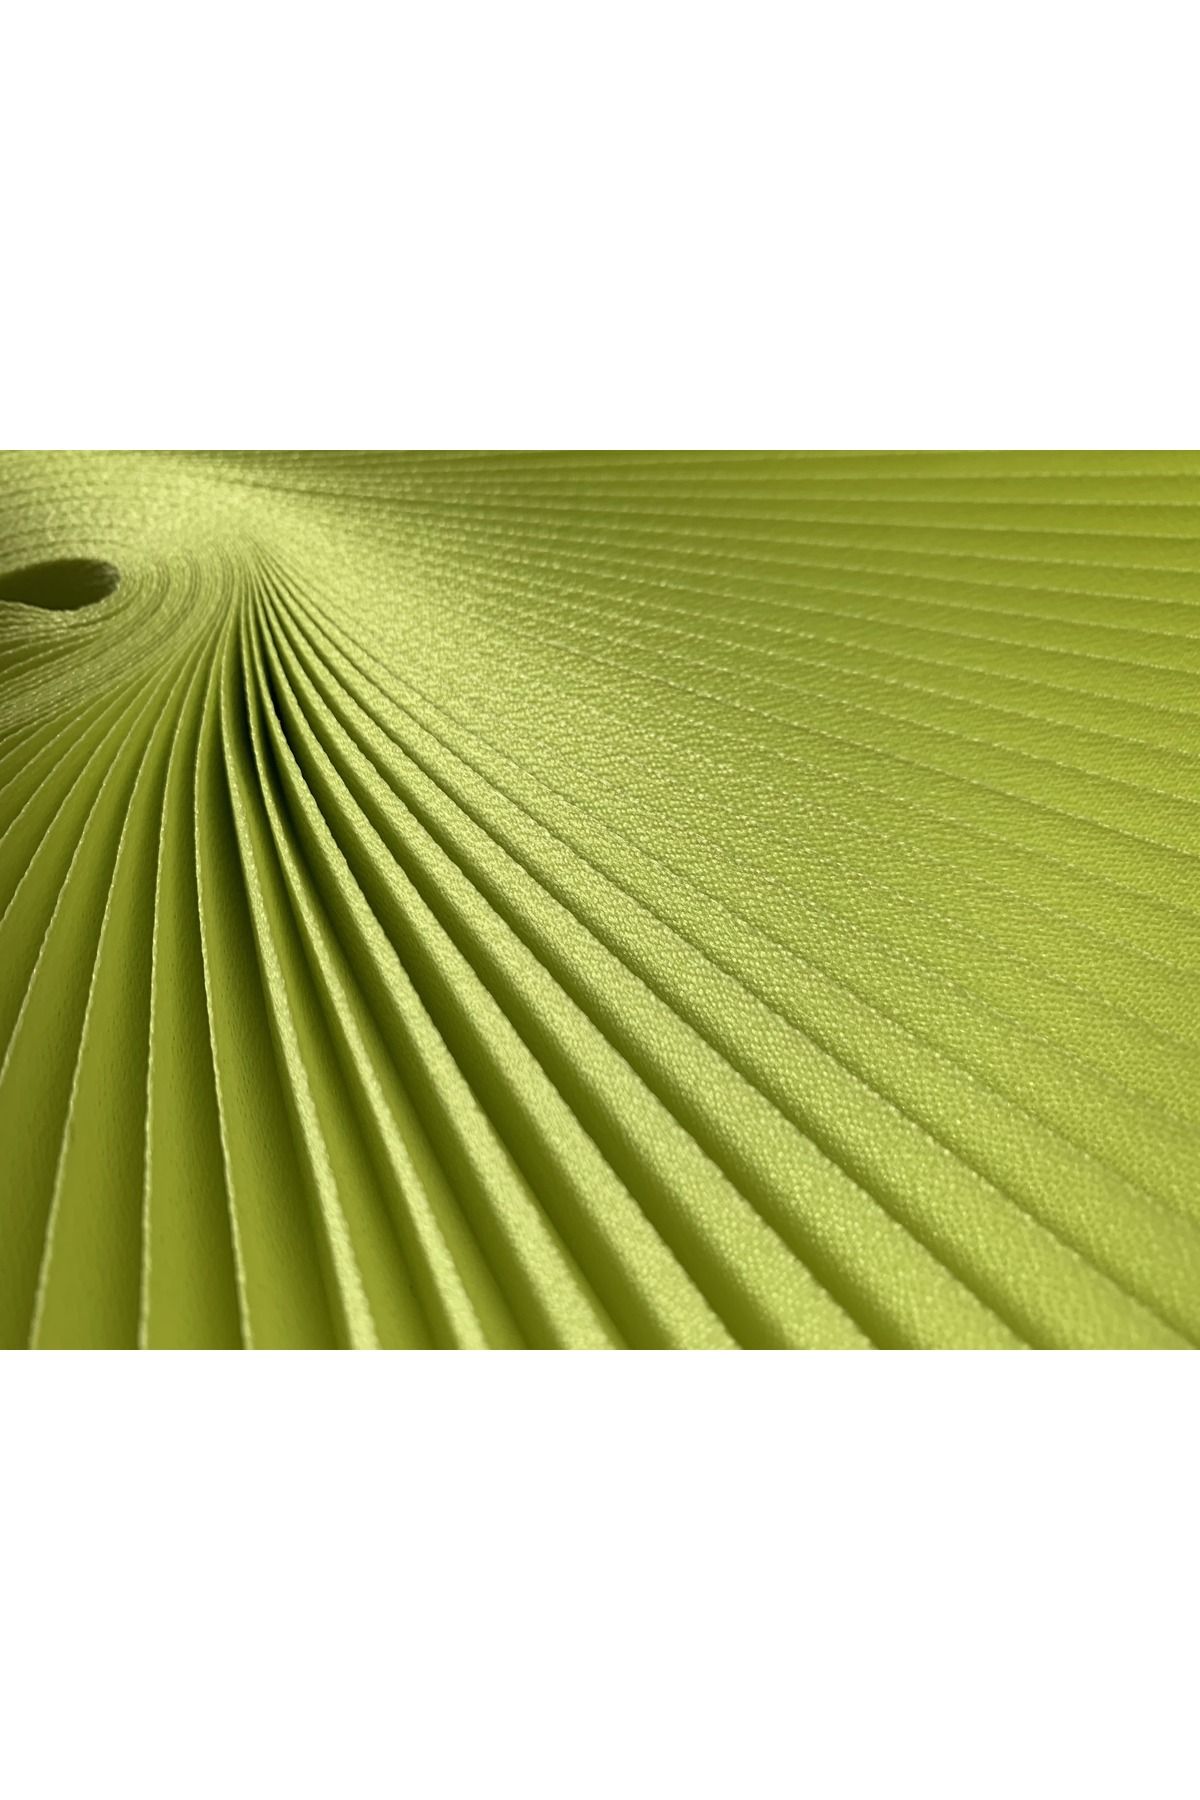 Persis Pliper Yeşil - Eni Orta Ölçü - Plise Cam Balkon Perdesi Yapışkanlı 3400011